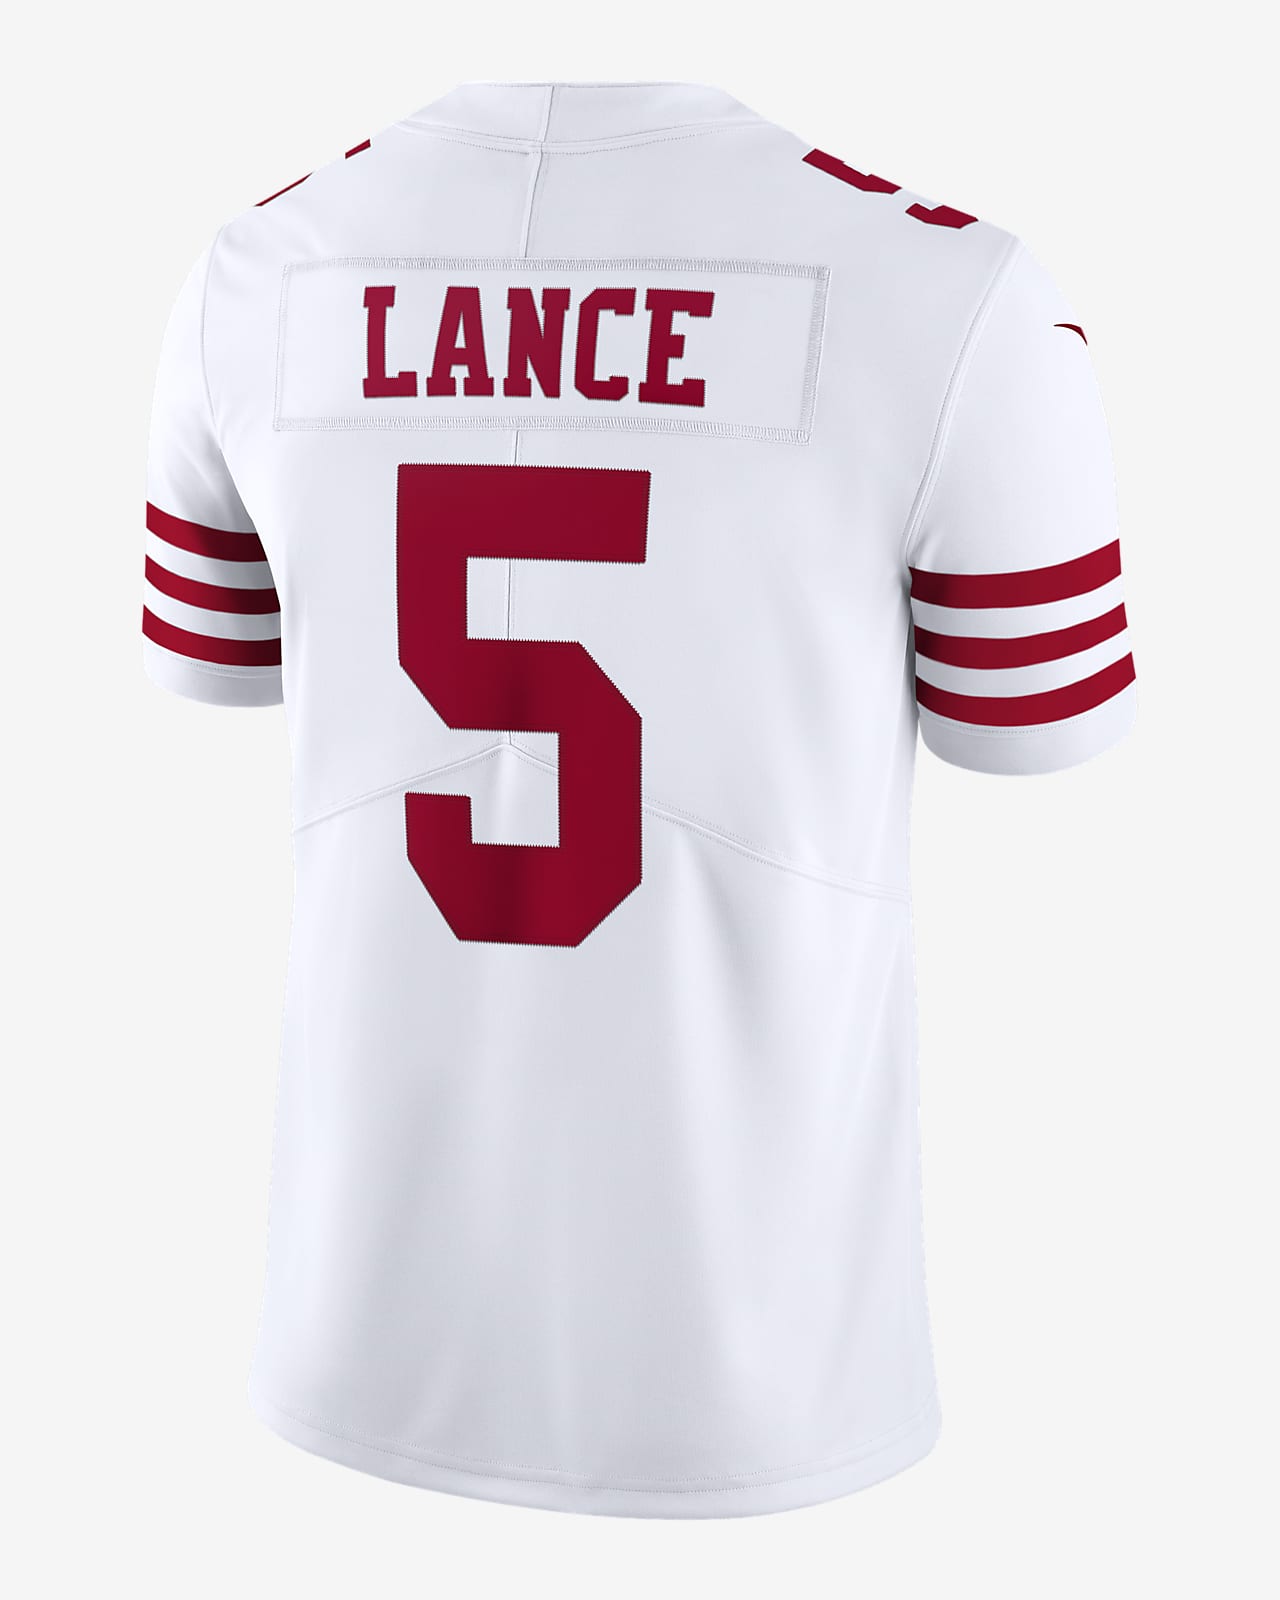 Jersey de fútbol americano edición limitada para hombre NFL San Francisco 49ers Nike Untouchable (Trey Lance).